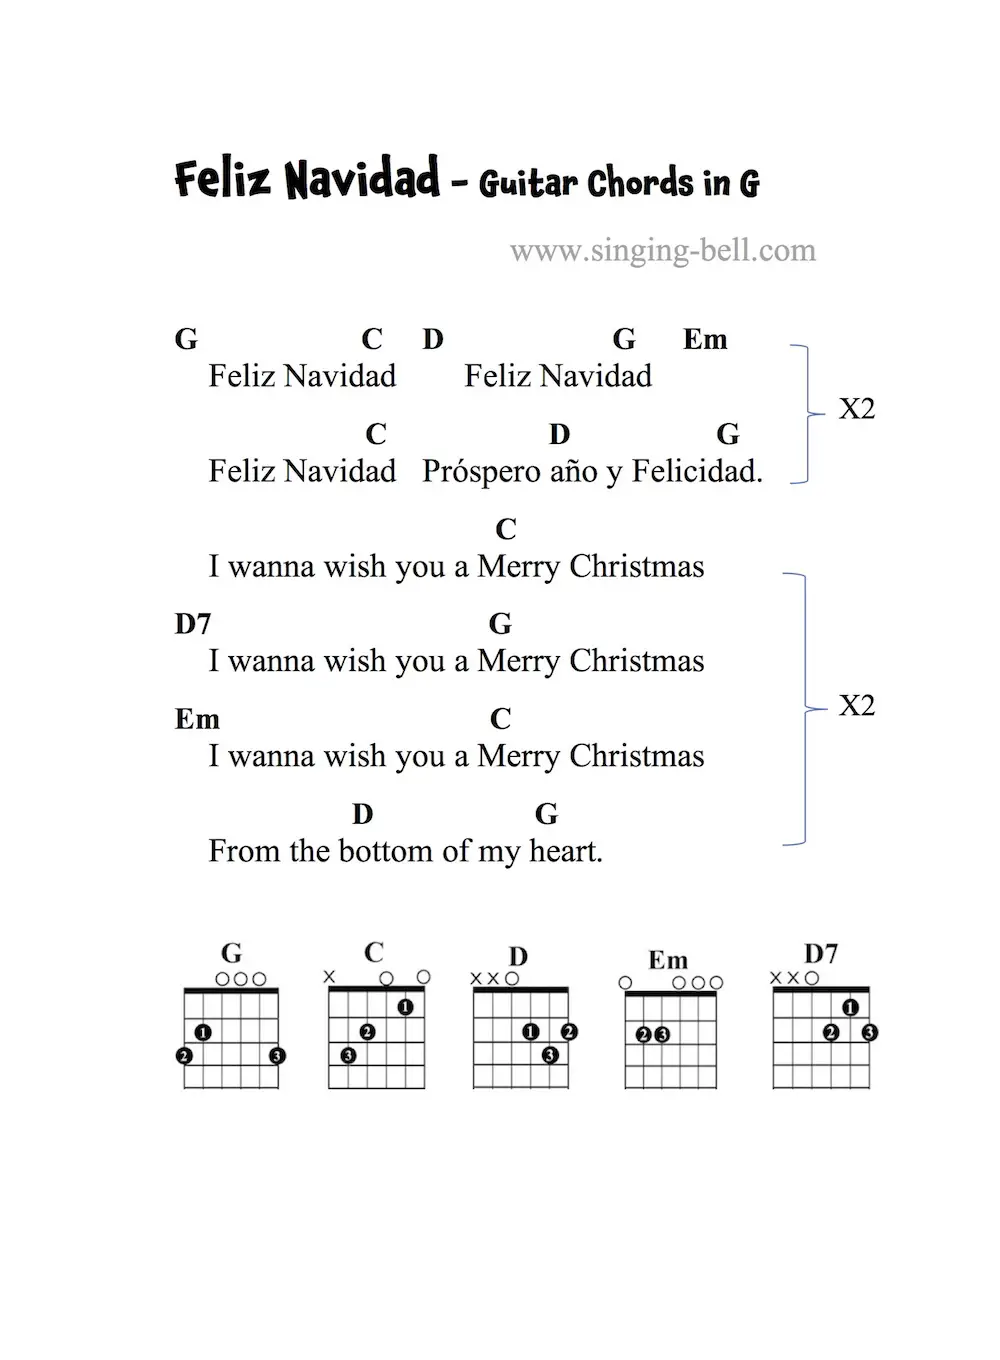 Feliz Navidad - Guitar Chords and Tabs in G.